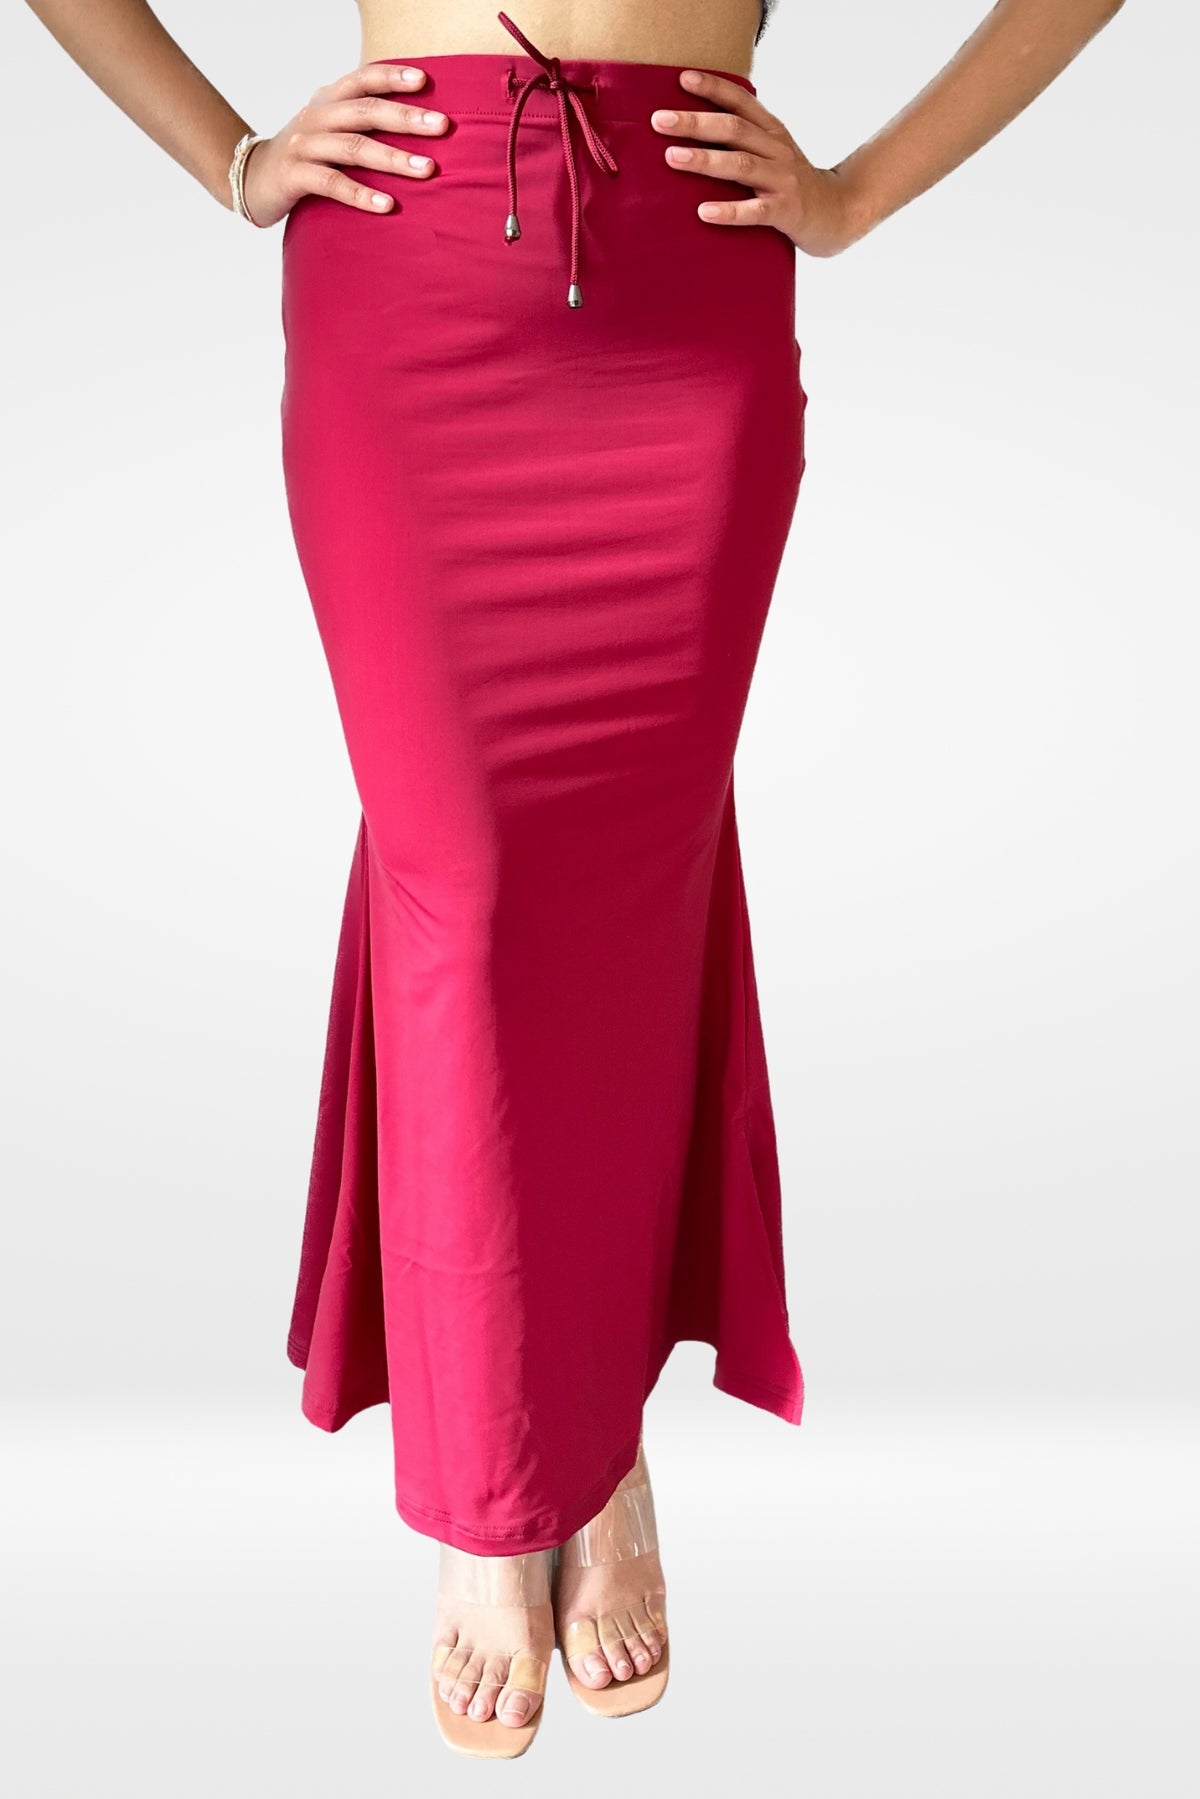 Red Saree Shaper, Ihara Sculpt-fit Petticoat